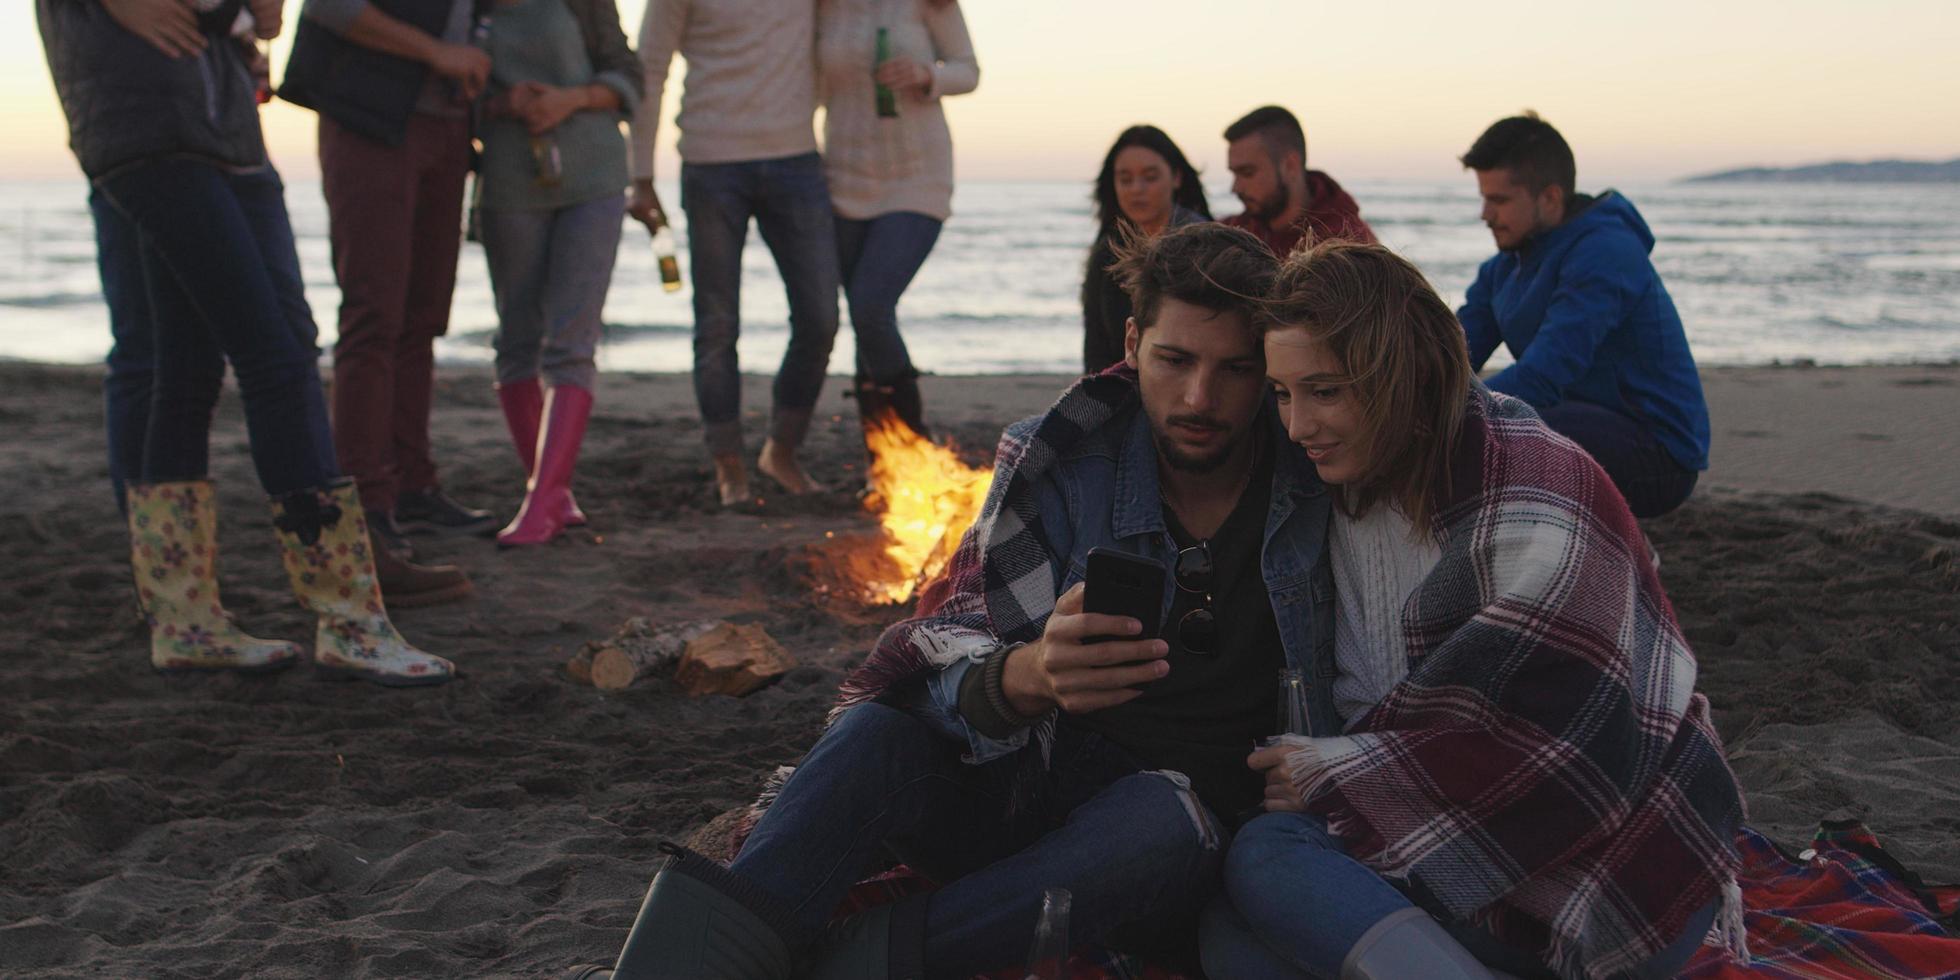 pareja disfrutando de la hoguera con amigos en la playa foto